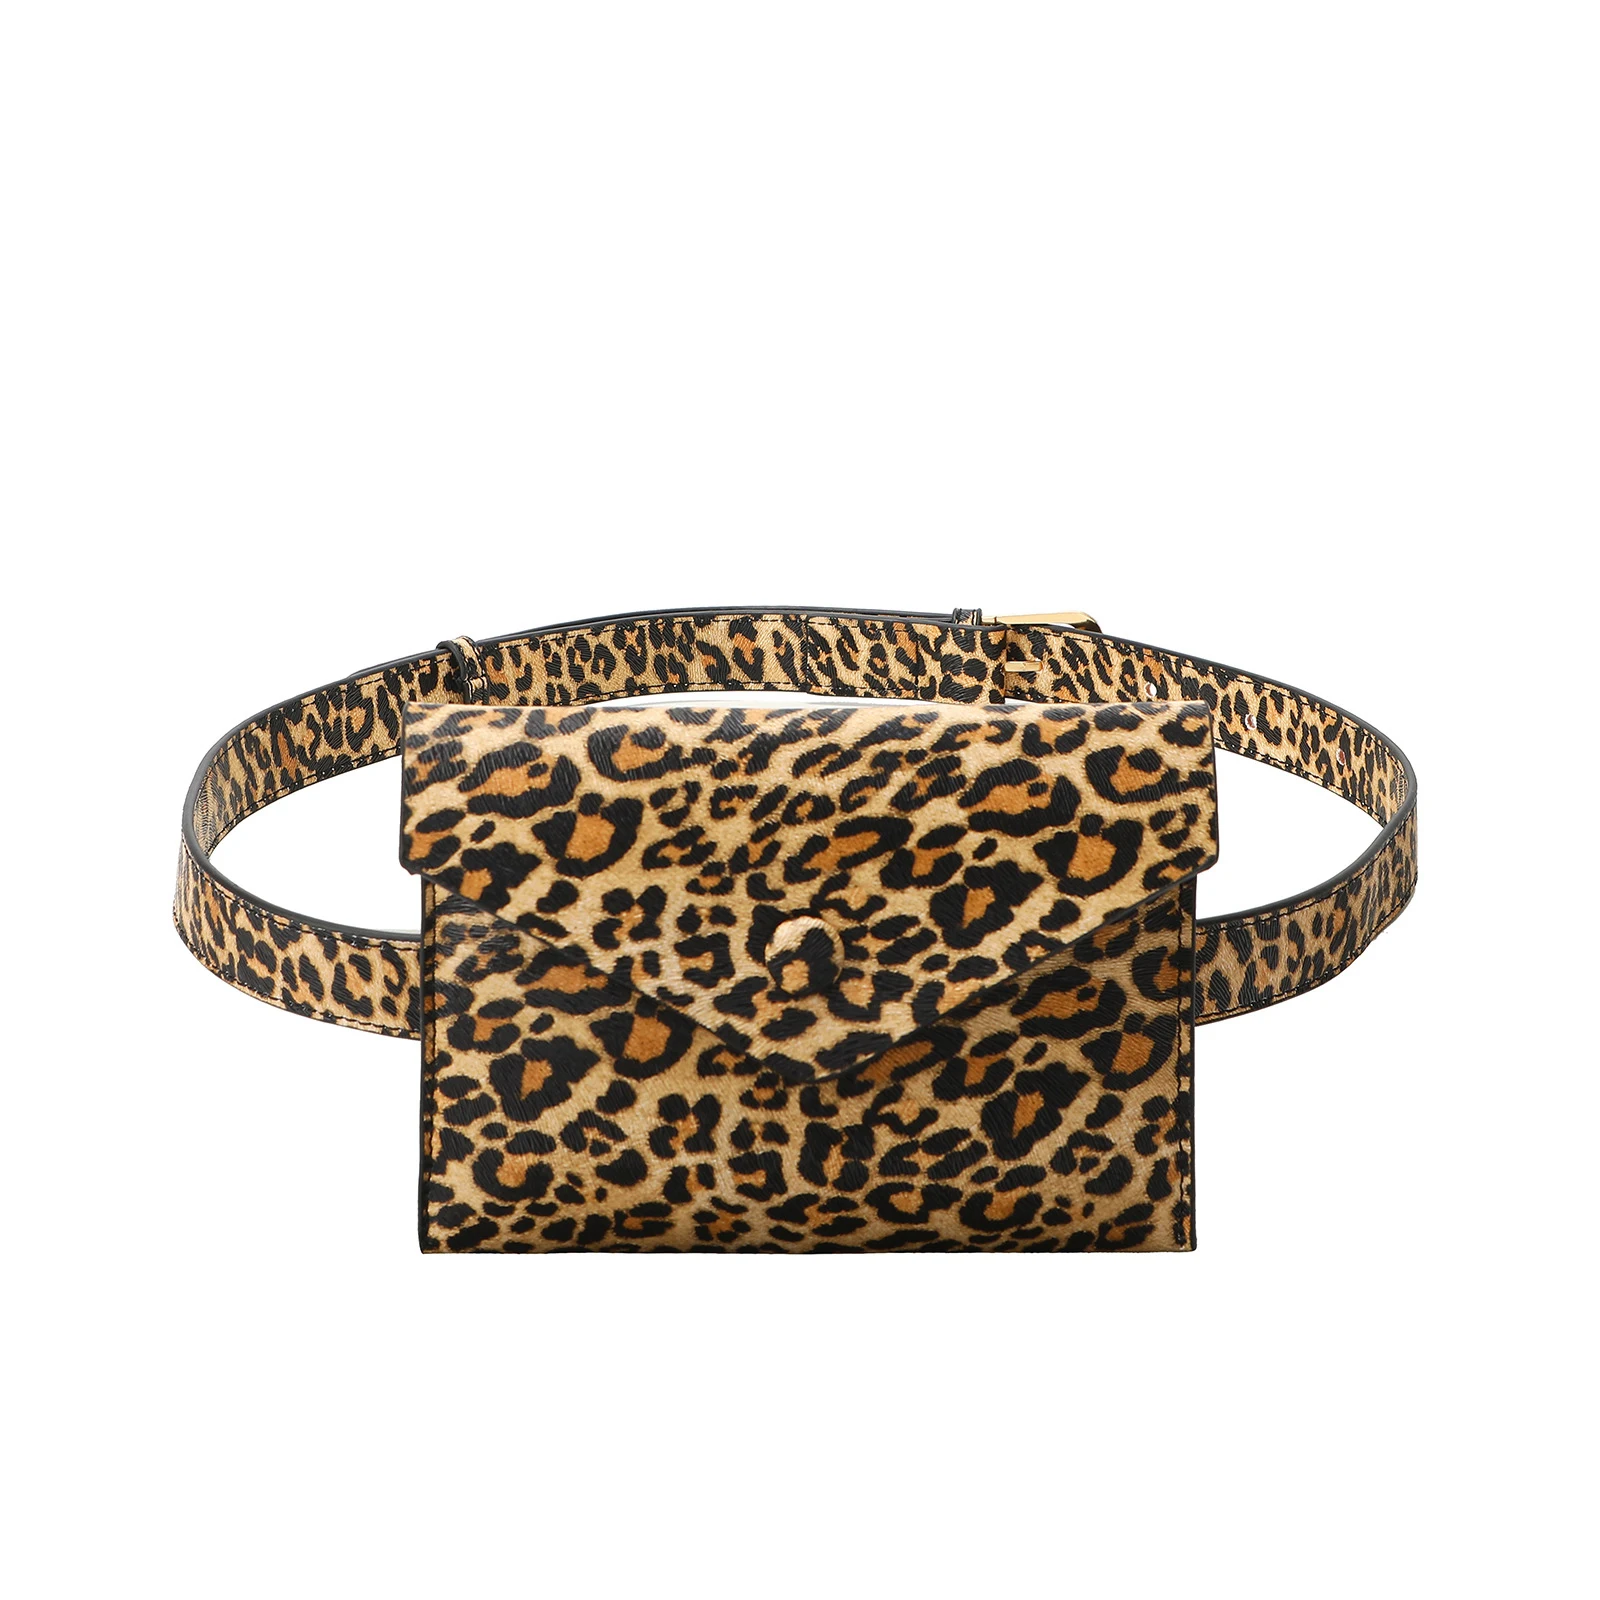 

JANHE Drop Shipping Custom sac banane pochete Luxury Leather Ladies Leopard belt Waist Begs Bum bags Purse Women Fanny Pack, Leopard/snakeskin